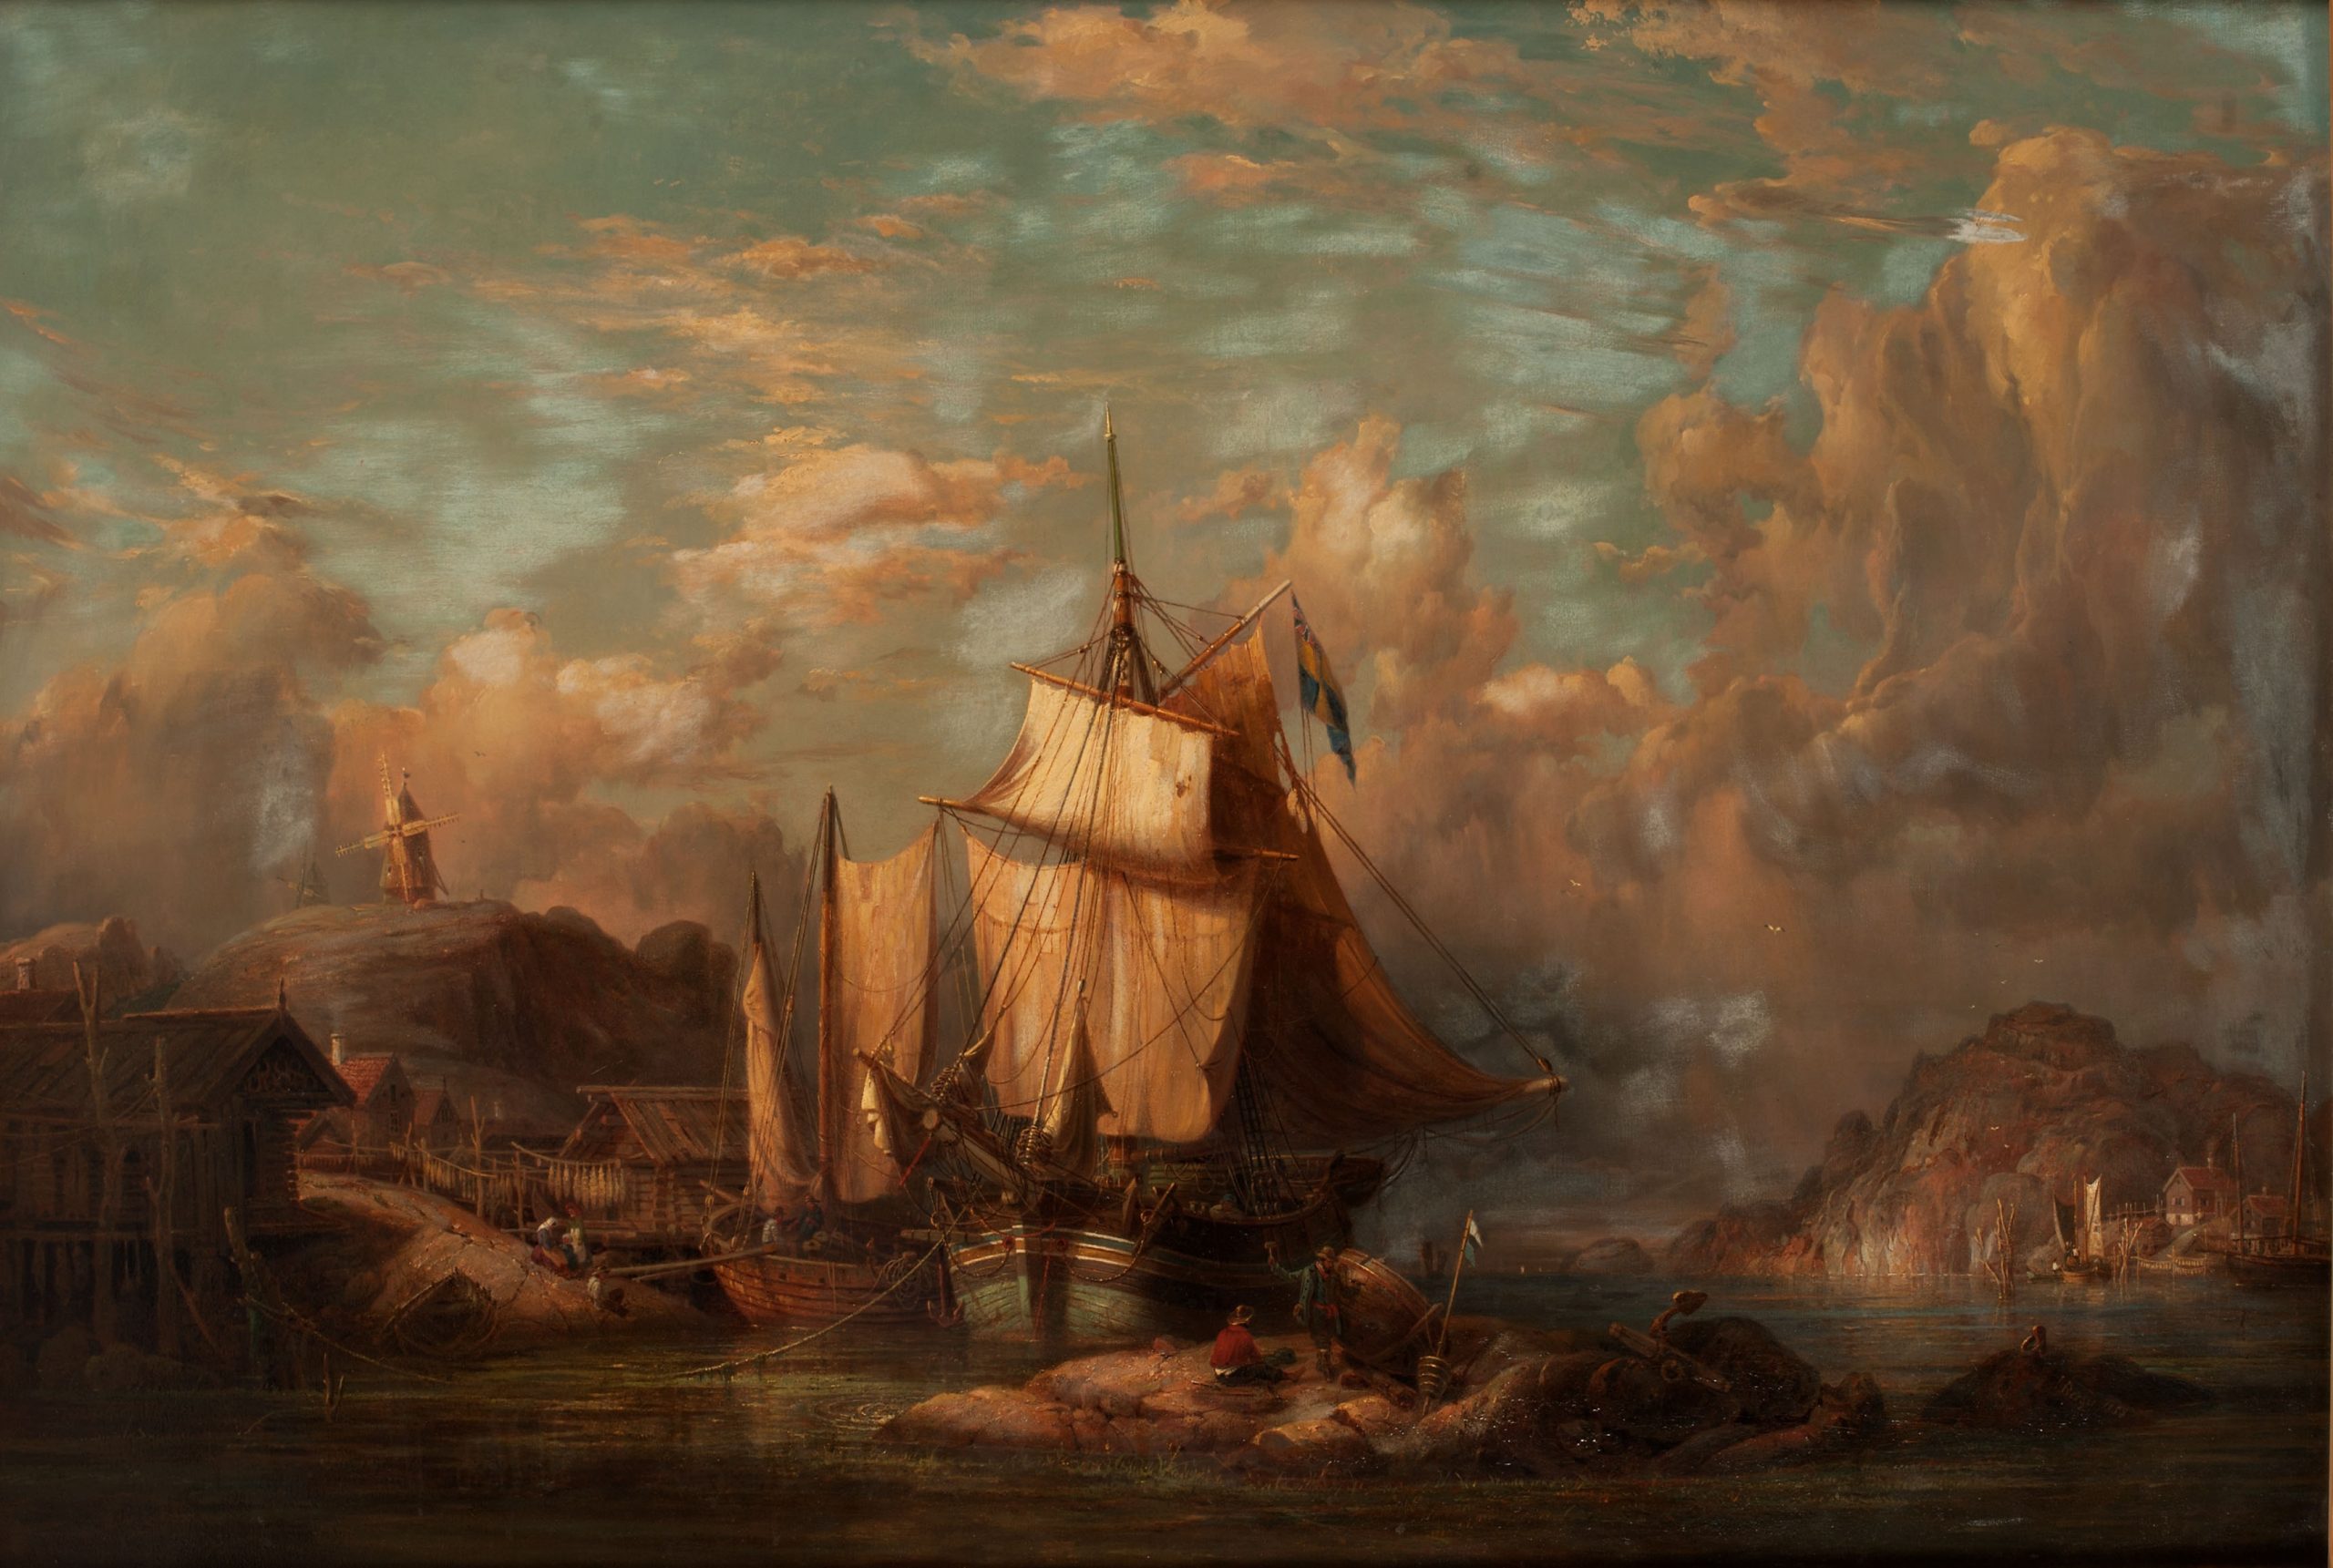 Målning med solnedgång i dramatiska färger. Två fartyg är förtöjda mellan klippor intill fiskeläge med sjöbodar och fisk på tork. På höjden en väderkvarn.